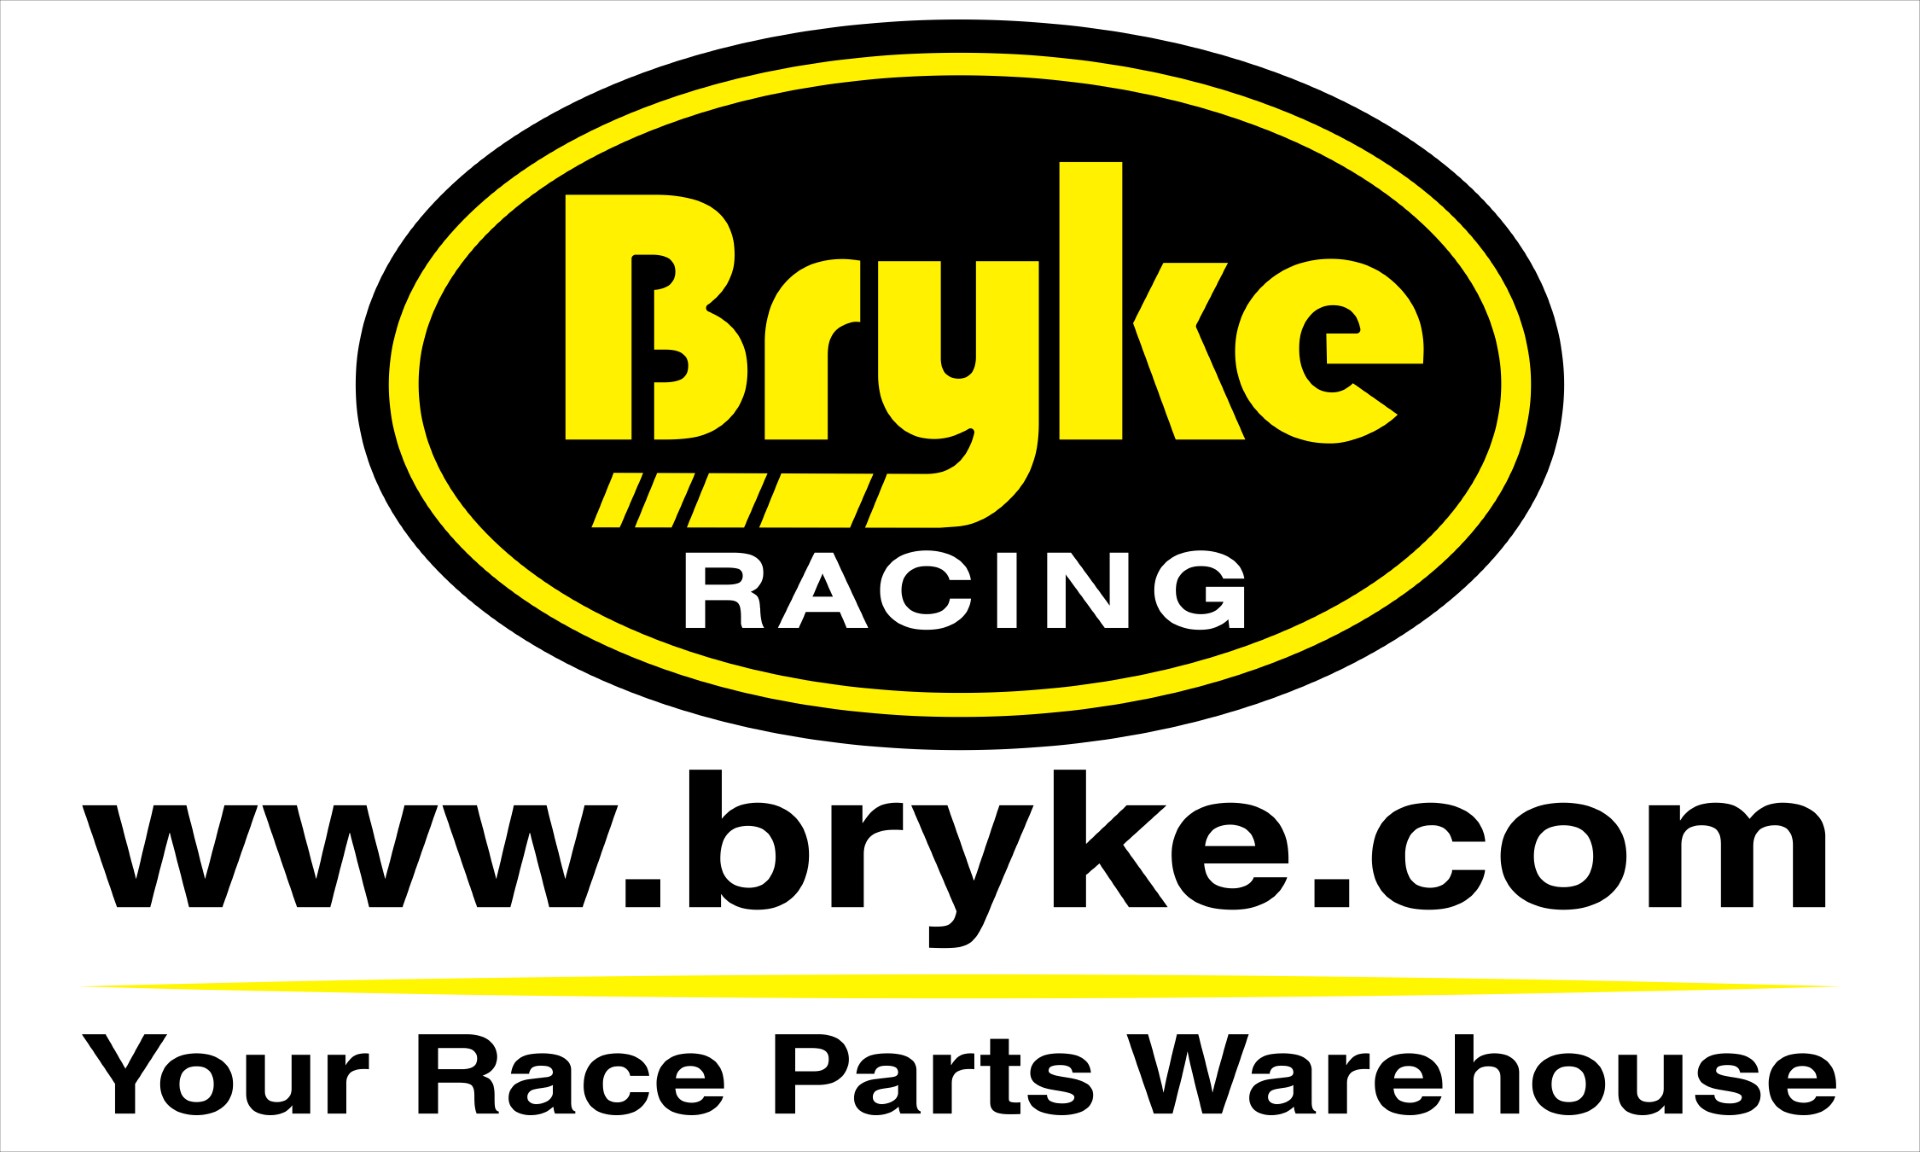 Bryke Racing